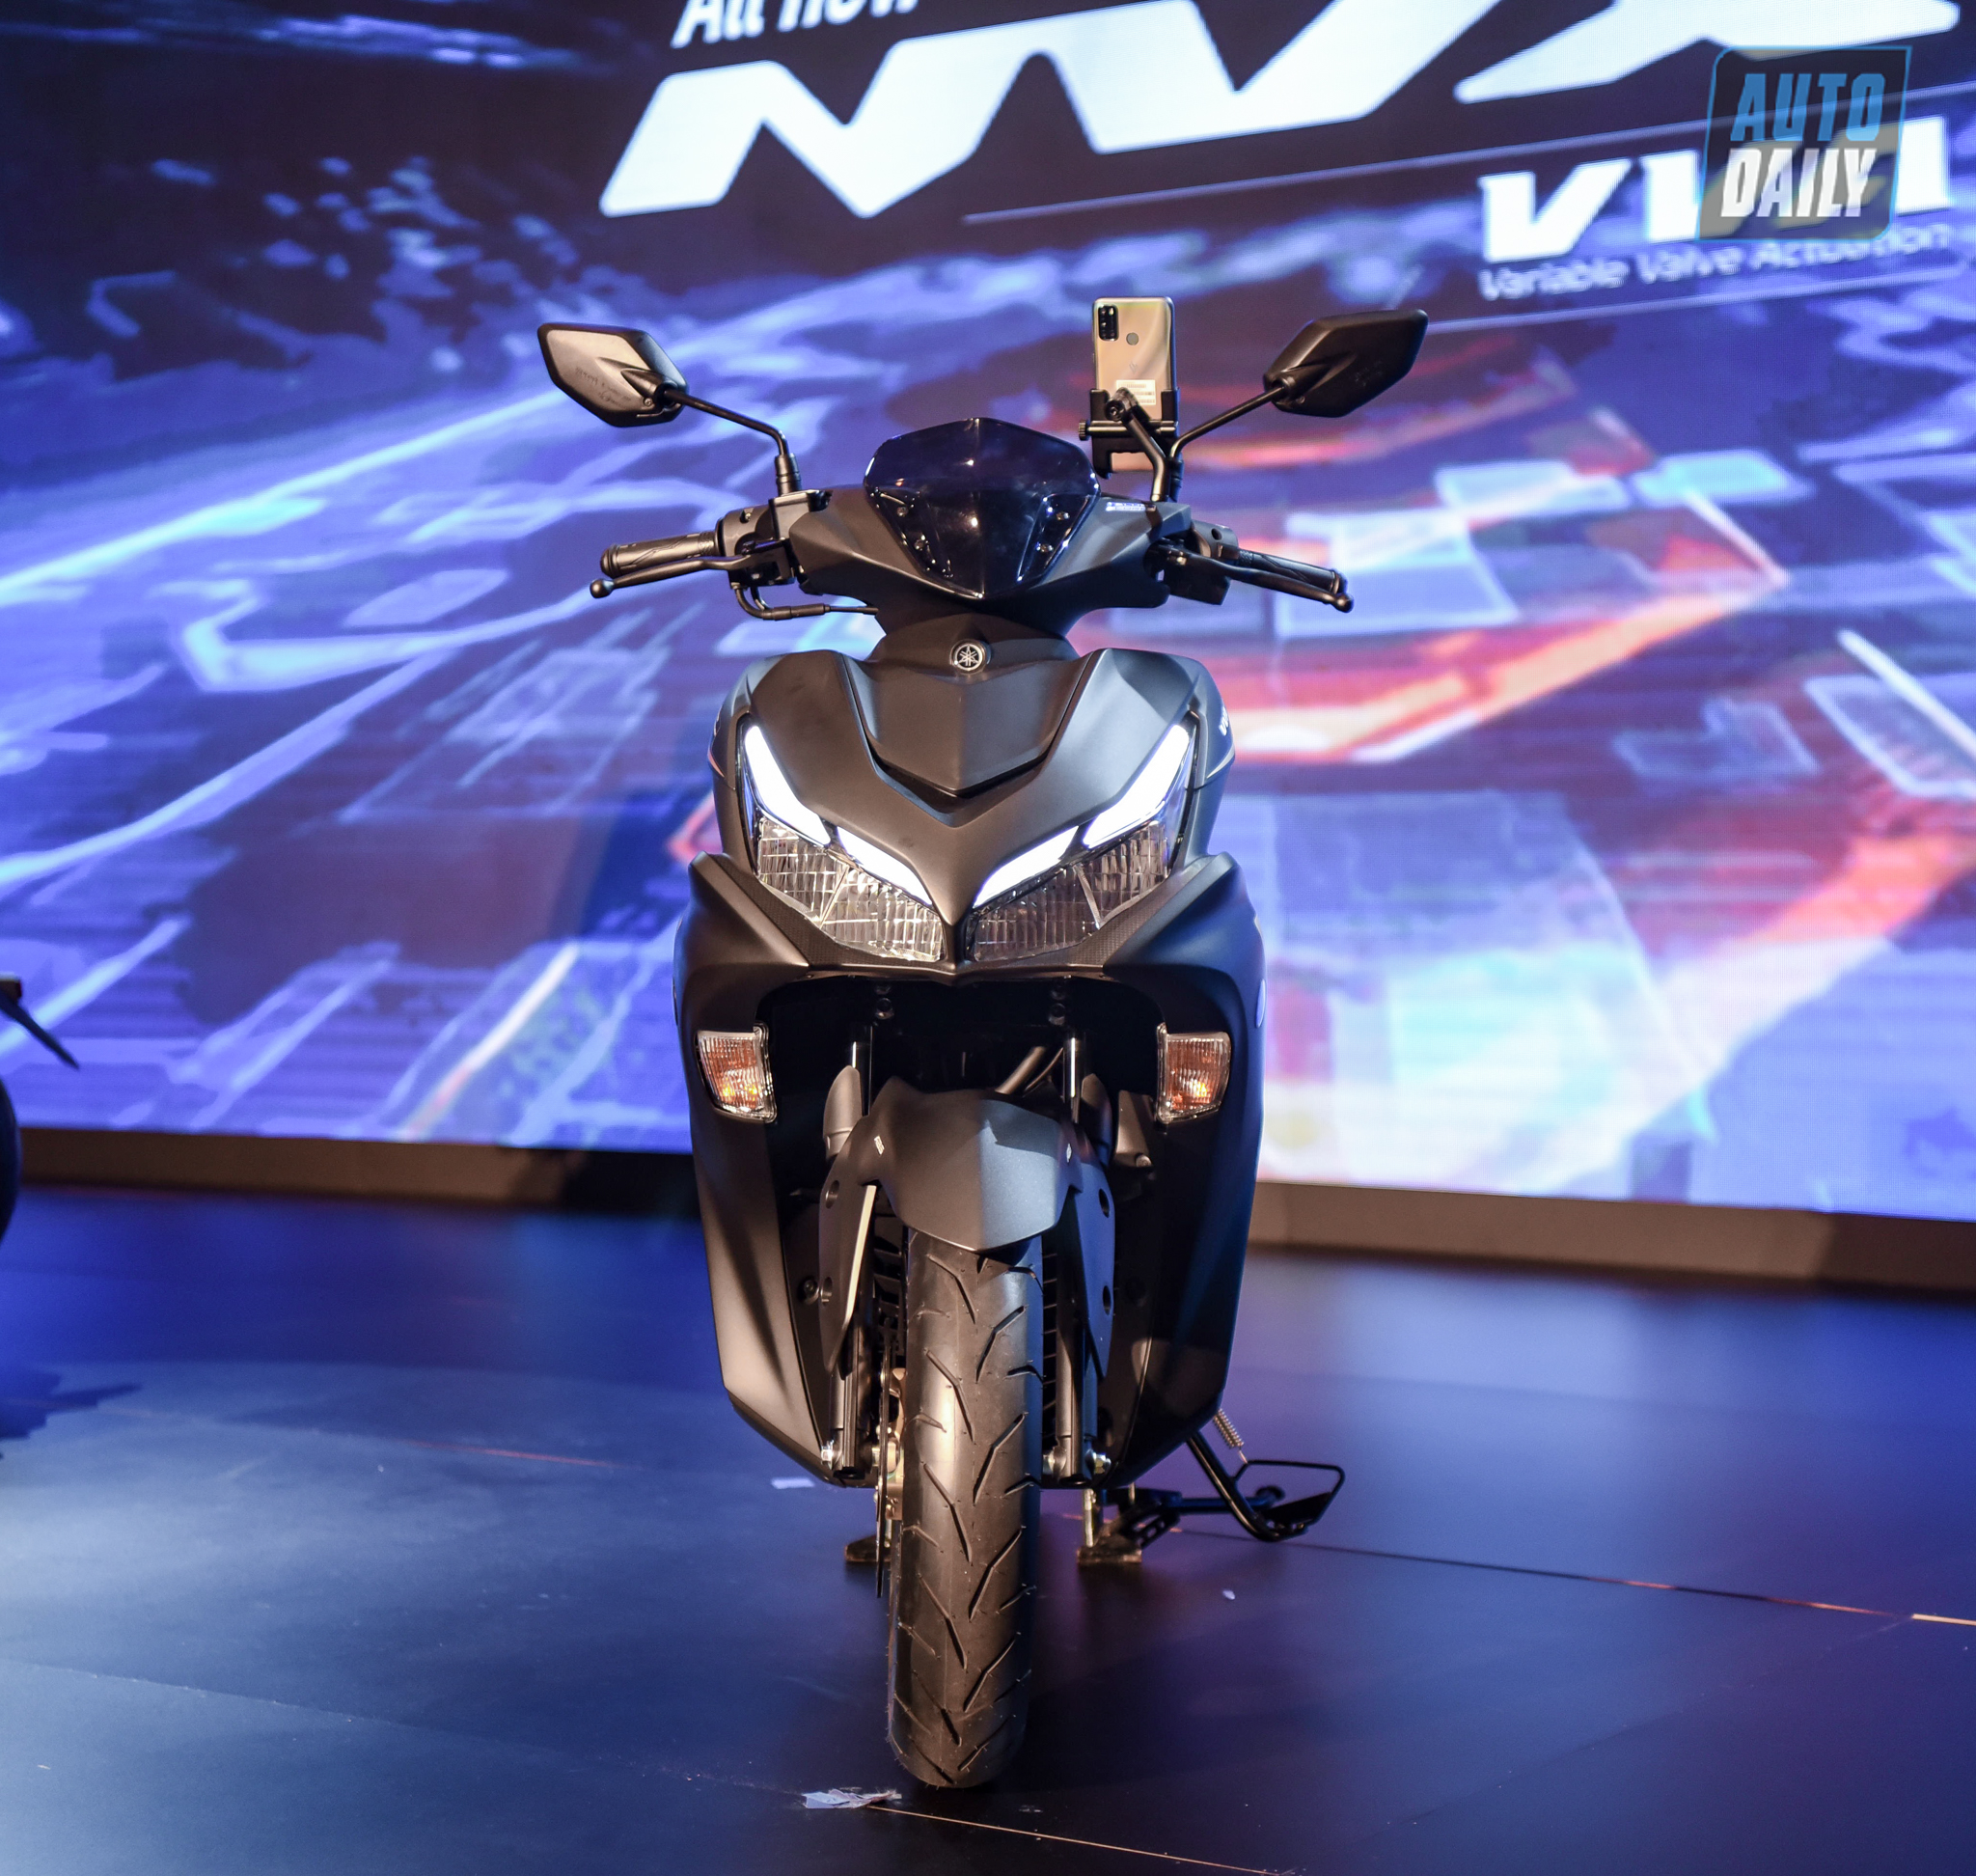 Chi tiết xe tay ga thể thao Yamaha NVX 155 2021 giá từ 53 triệu đồng yamaha-nvx-36.jpg